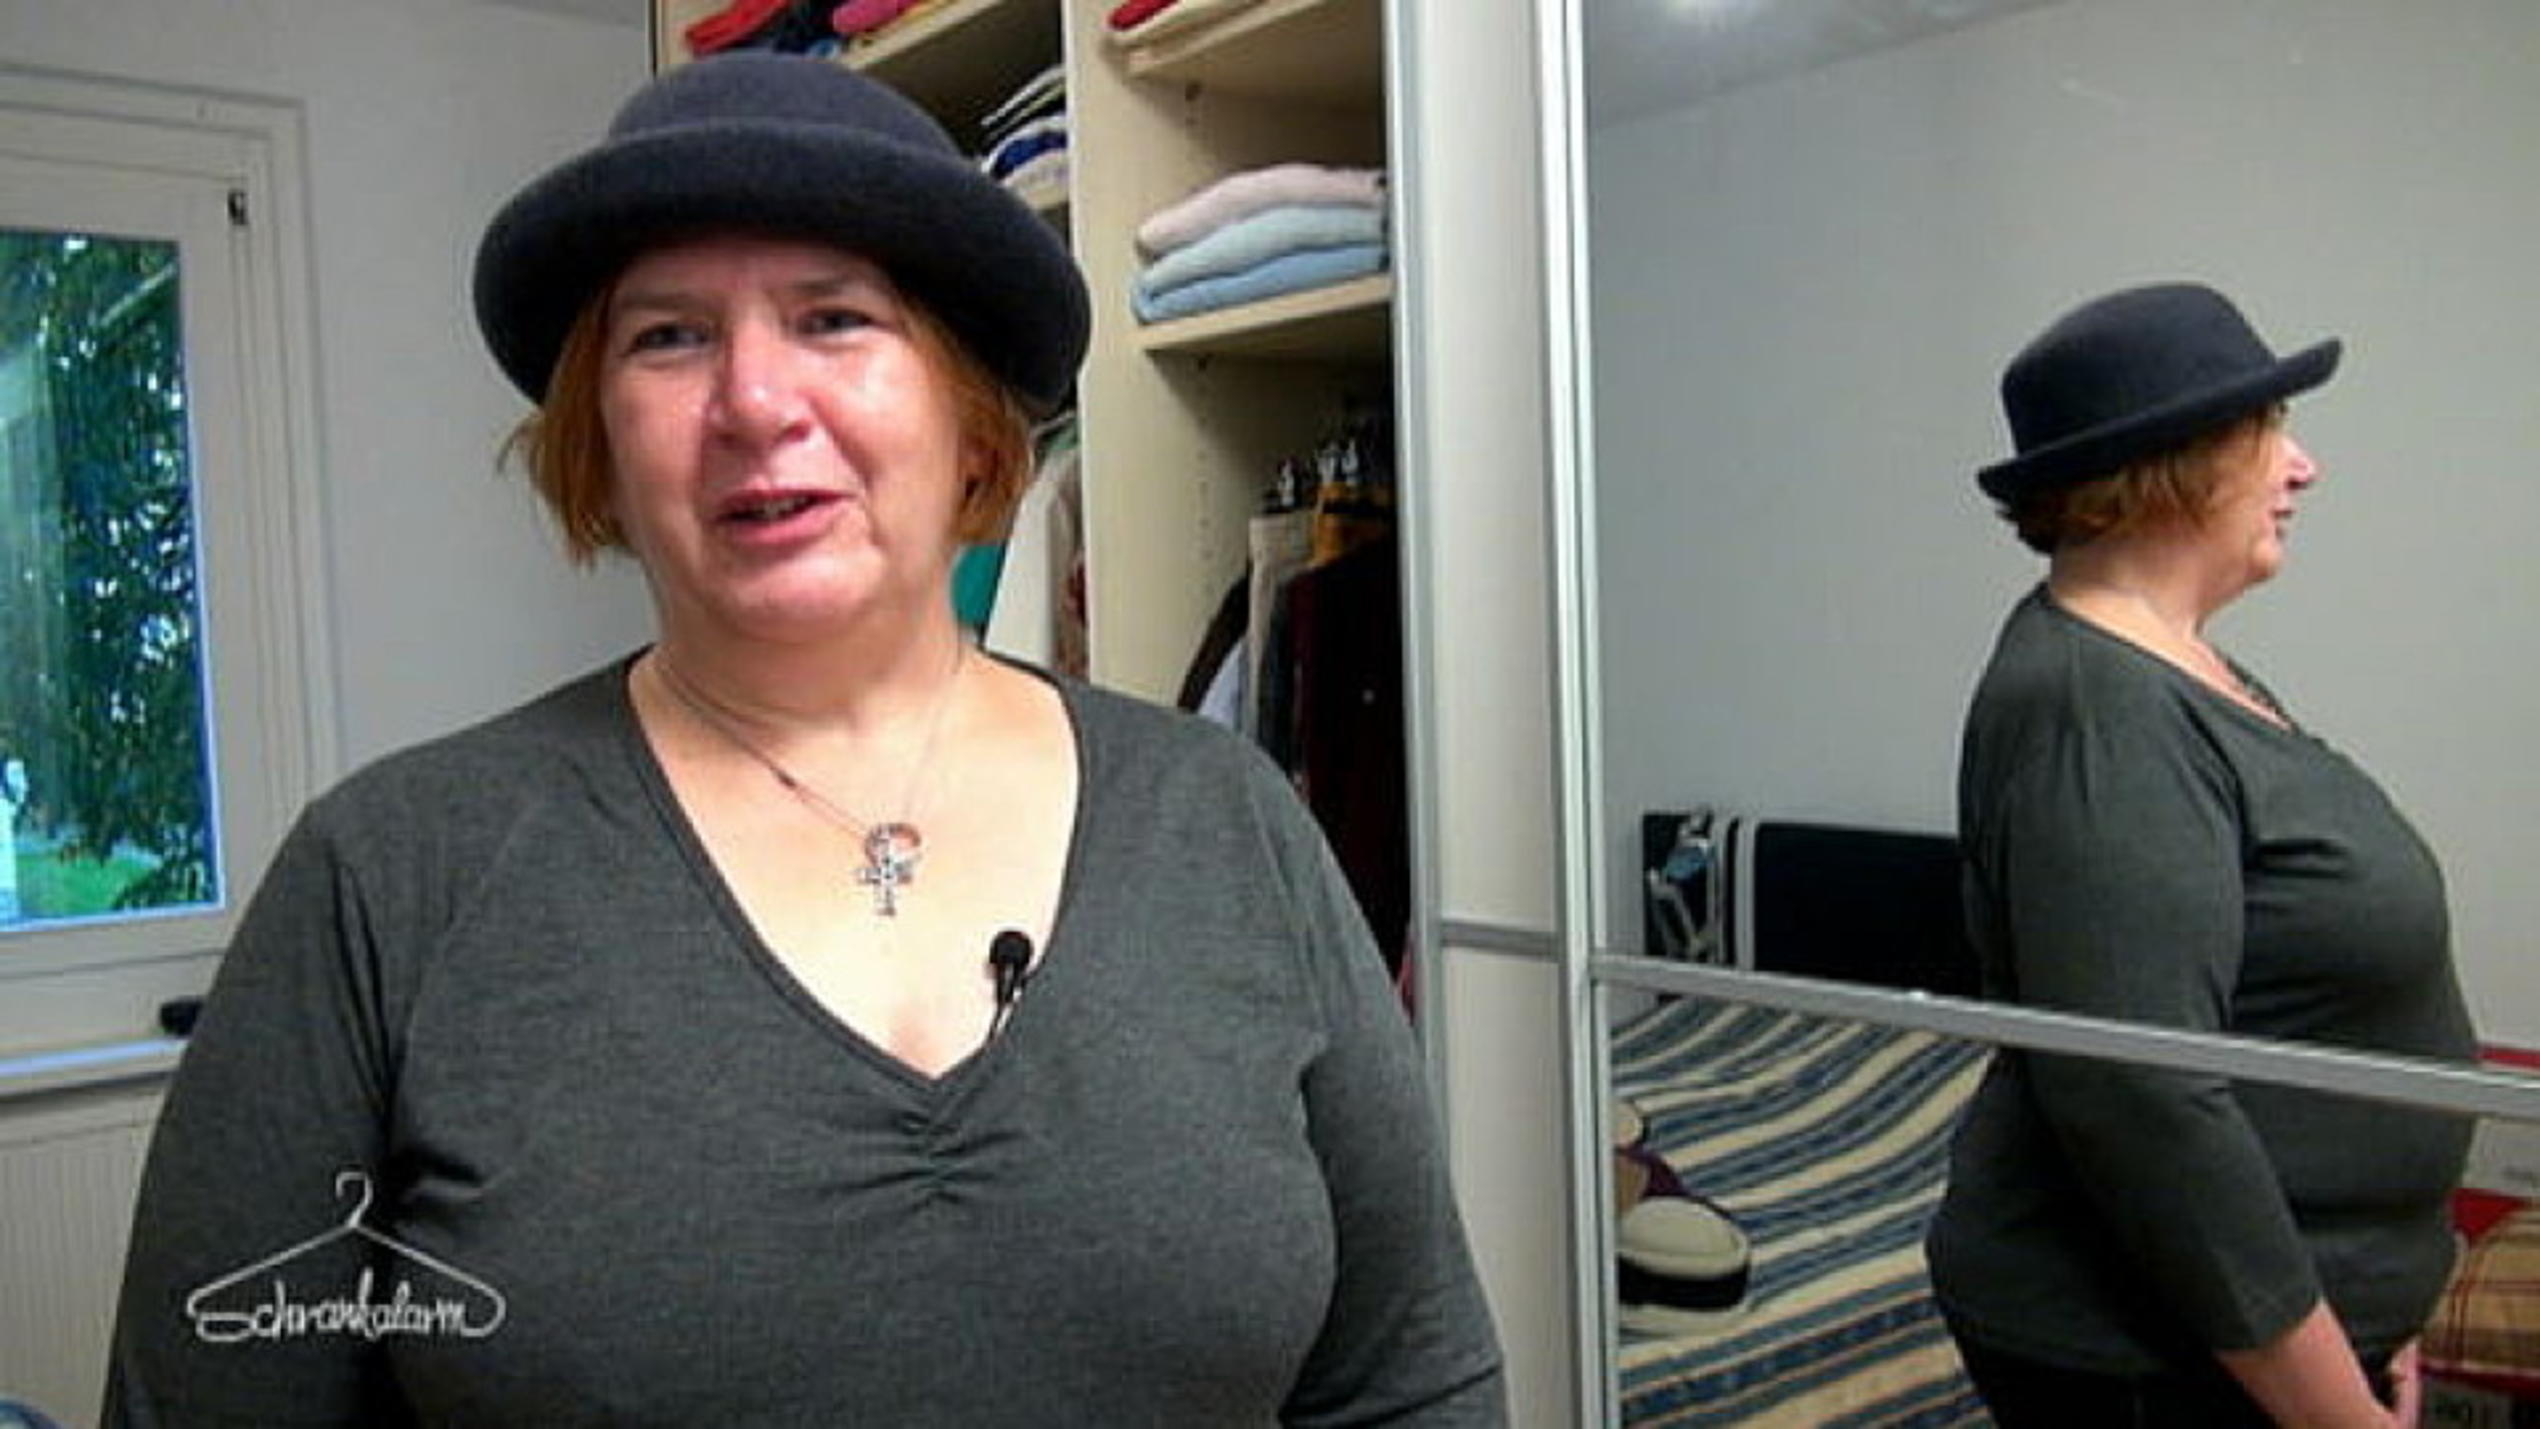 Schrankalarm: Claudia möchte ihre Outfits mit ihren Hüten kombinieren